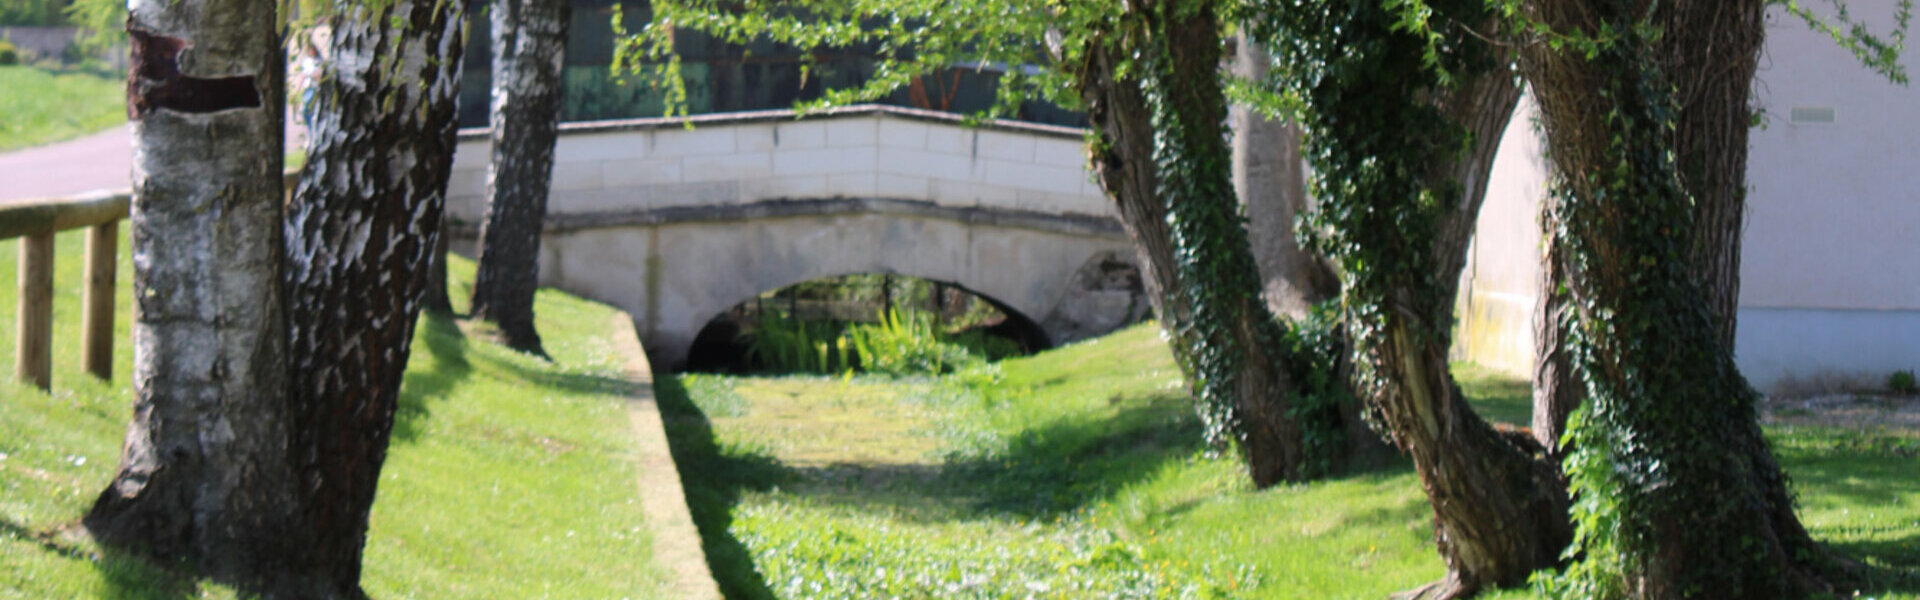 Commune de Brion dans l'Yonne